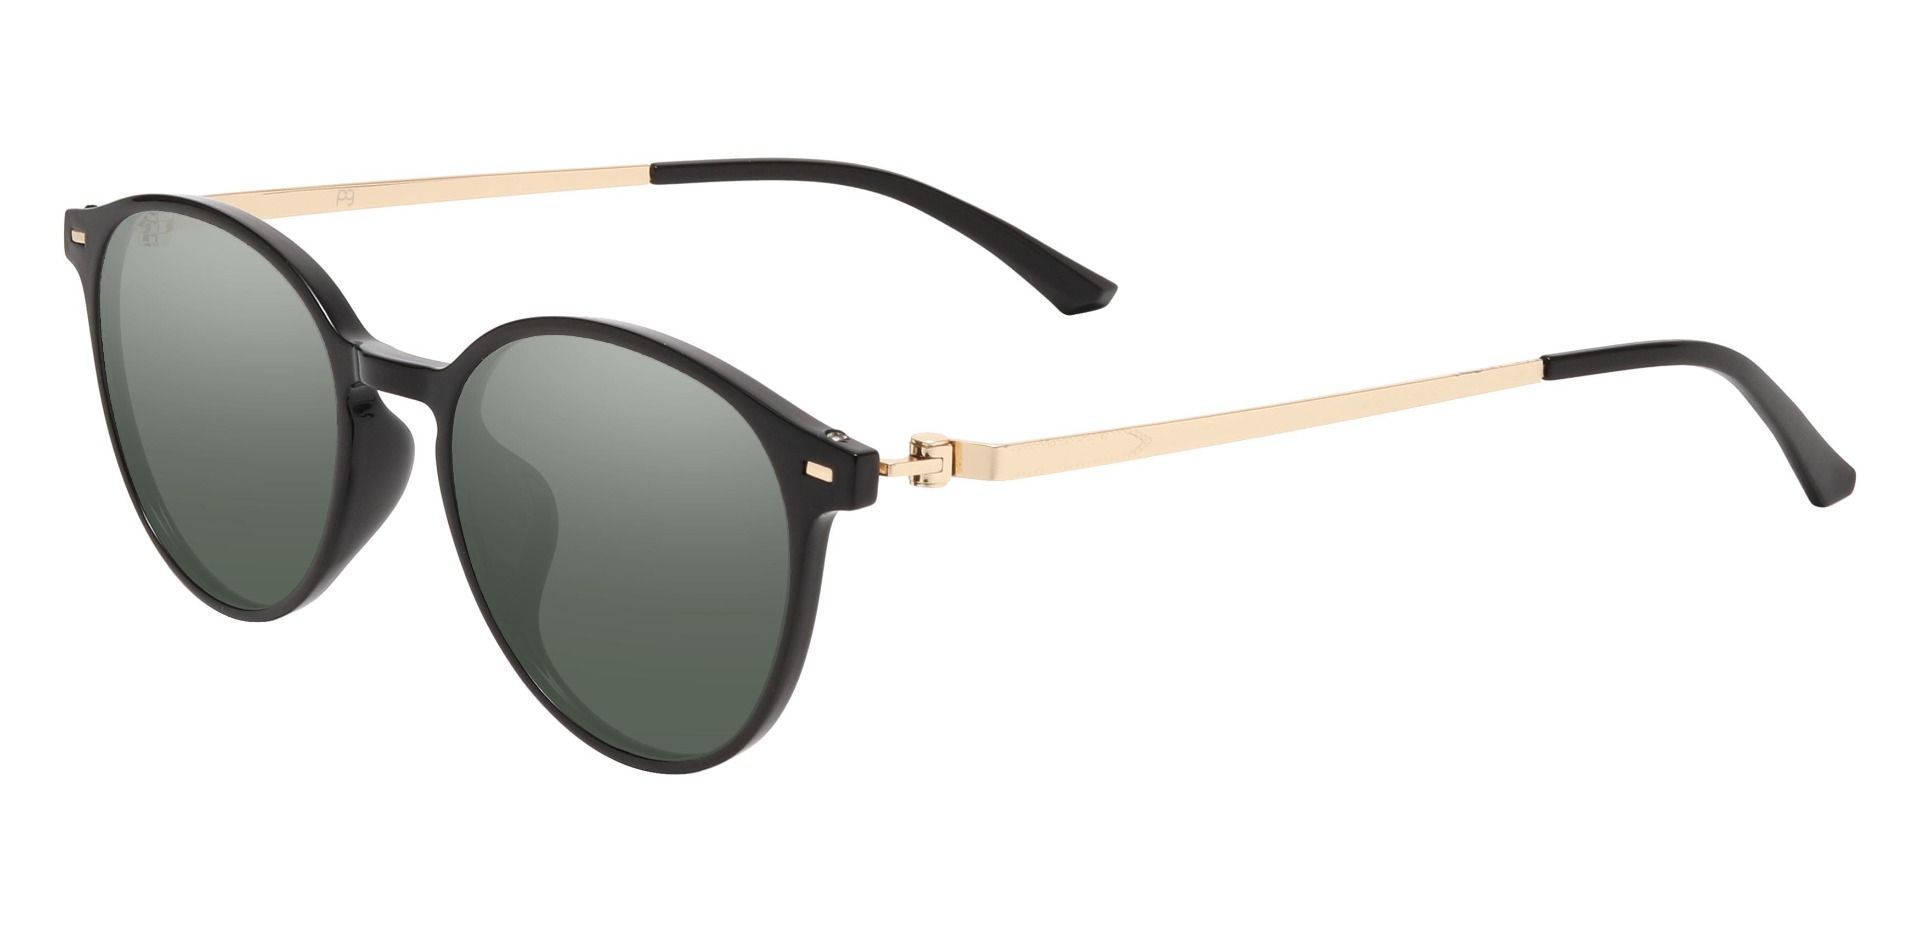 Springer Round Progressive Sunglasses - Black Frame With Green Lenses